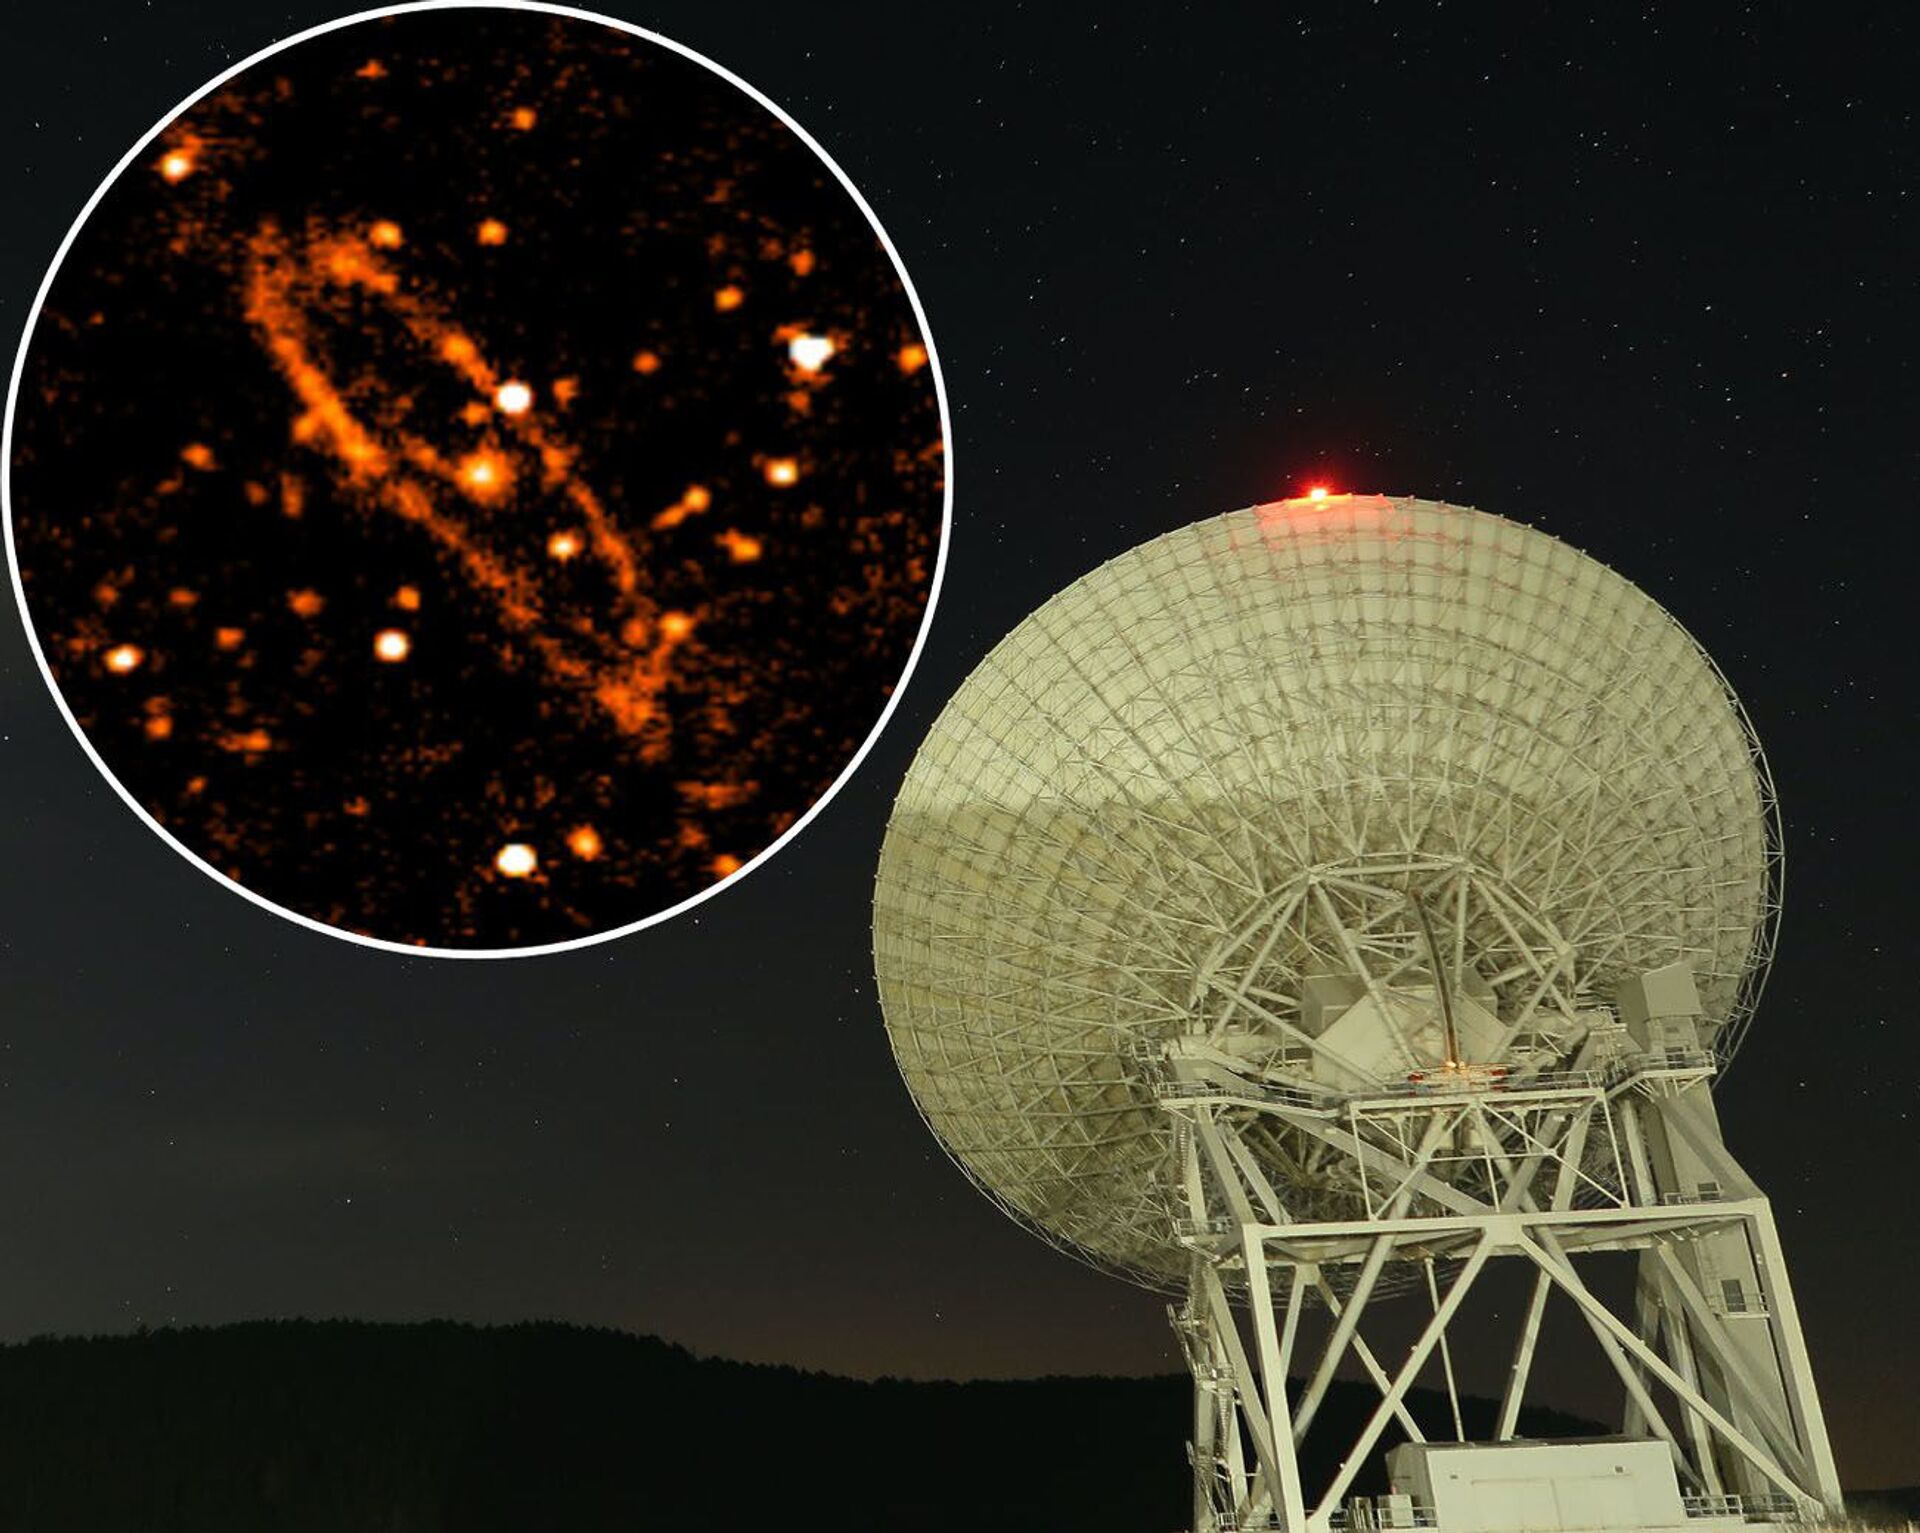 Cientistas capturam imagem mais detalhada até hoje da galáxia Andrômeda (FOTOS)  - Sputnik Brasil, 1920, 01.08.2021